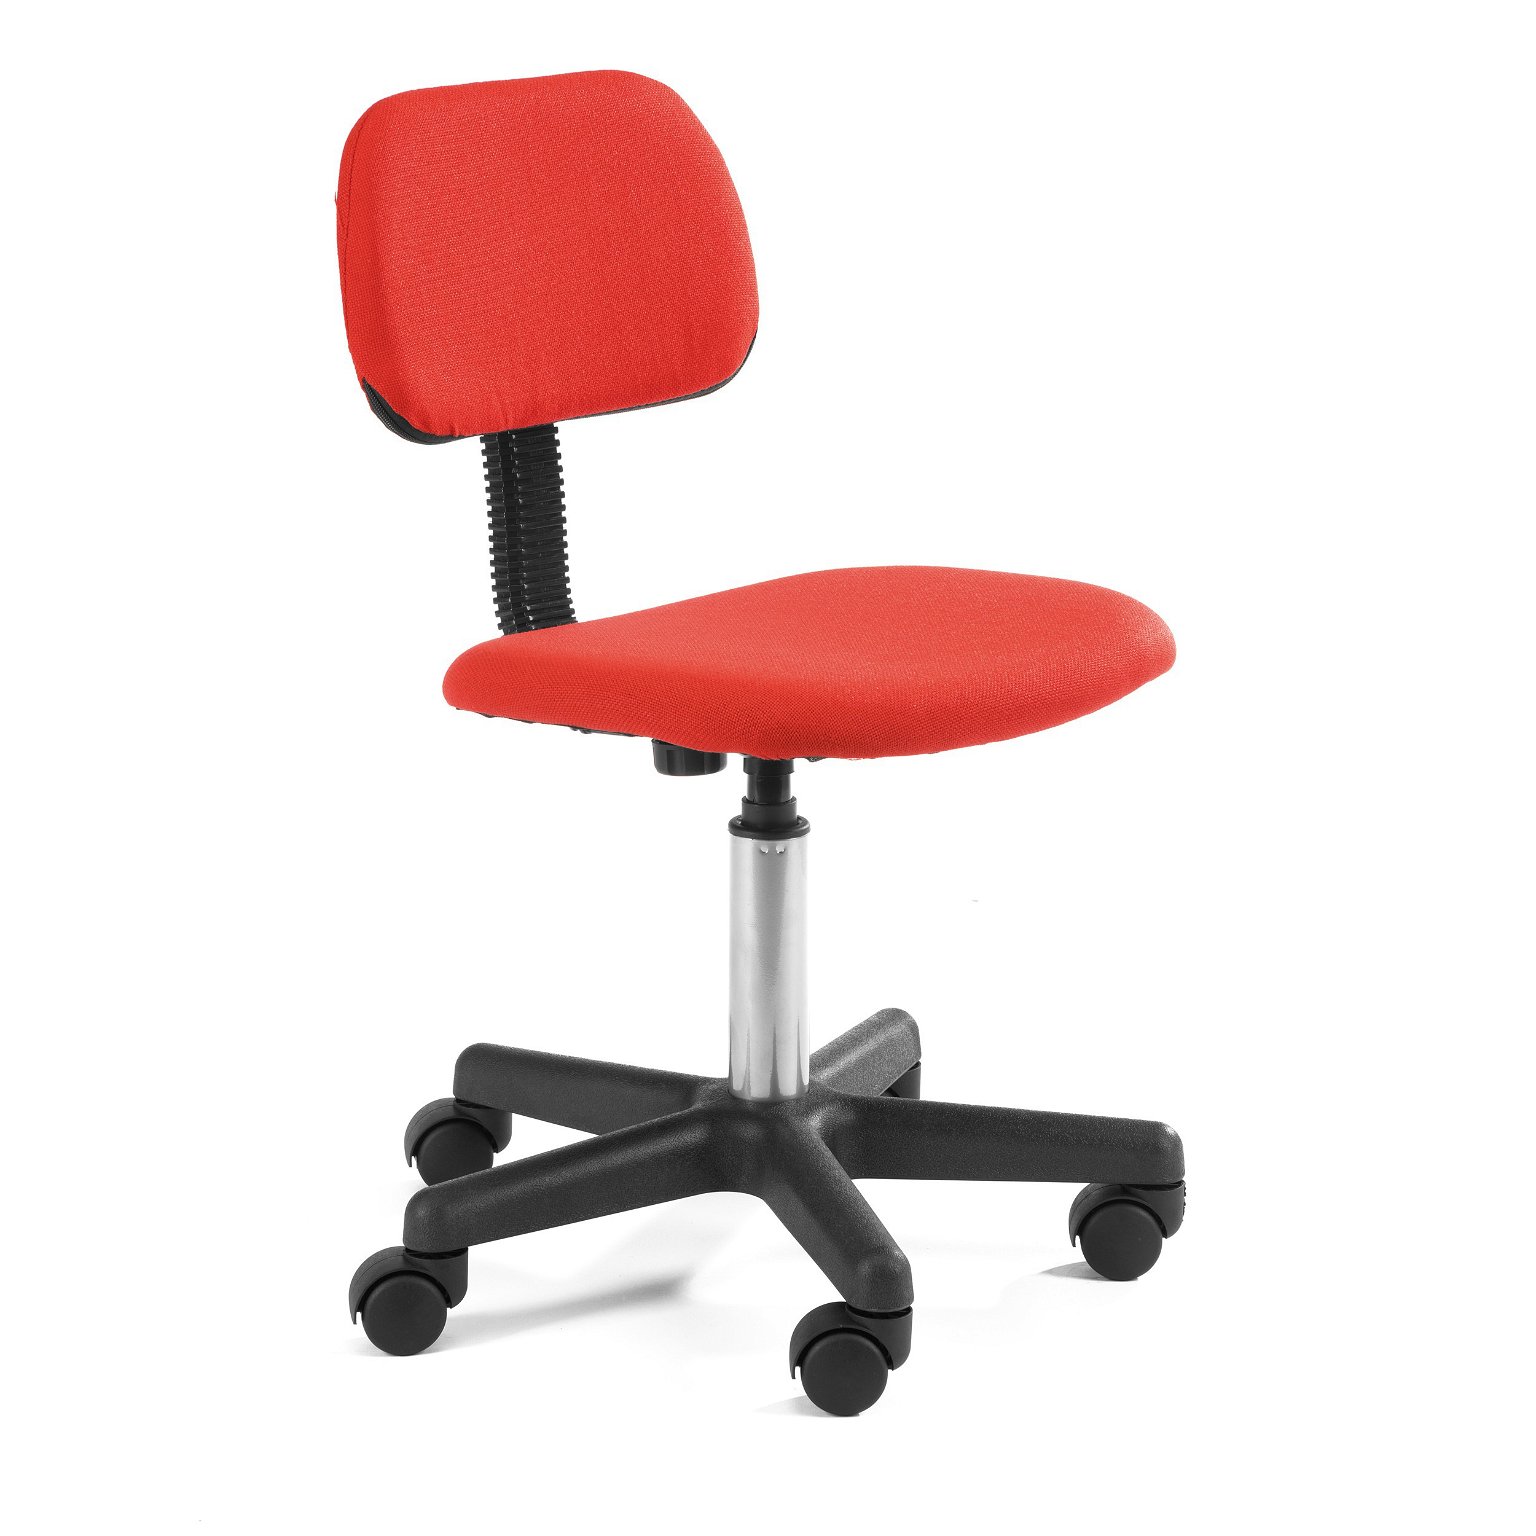 Vaikiška kėdė Fd-1, raudona - 1